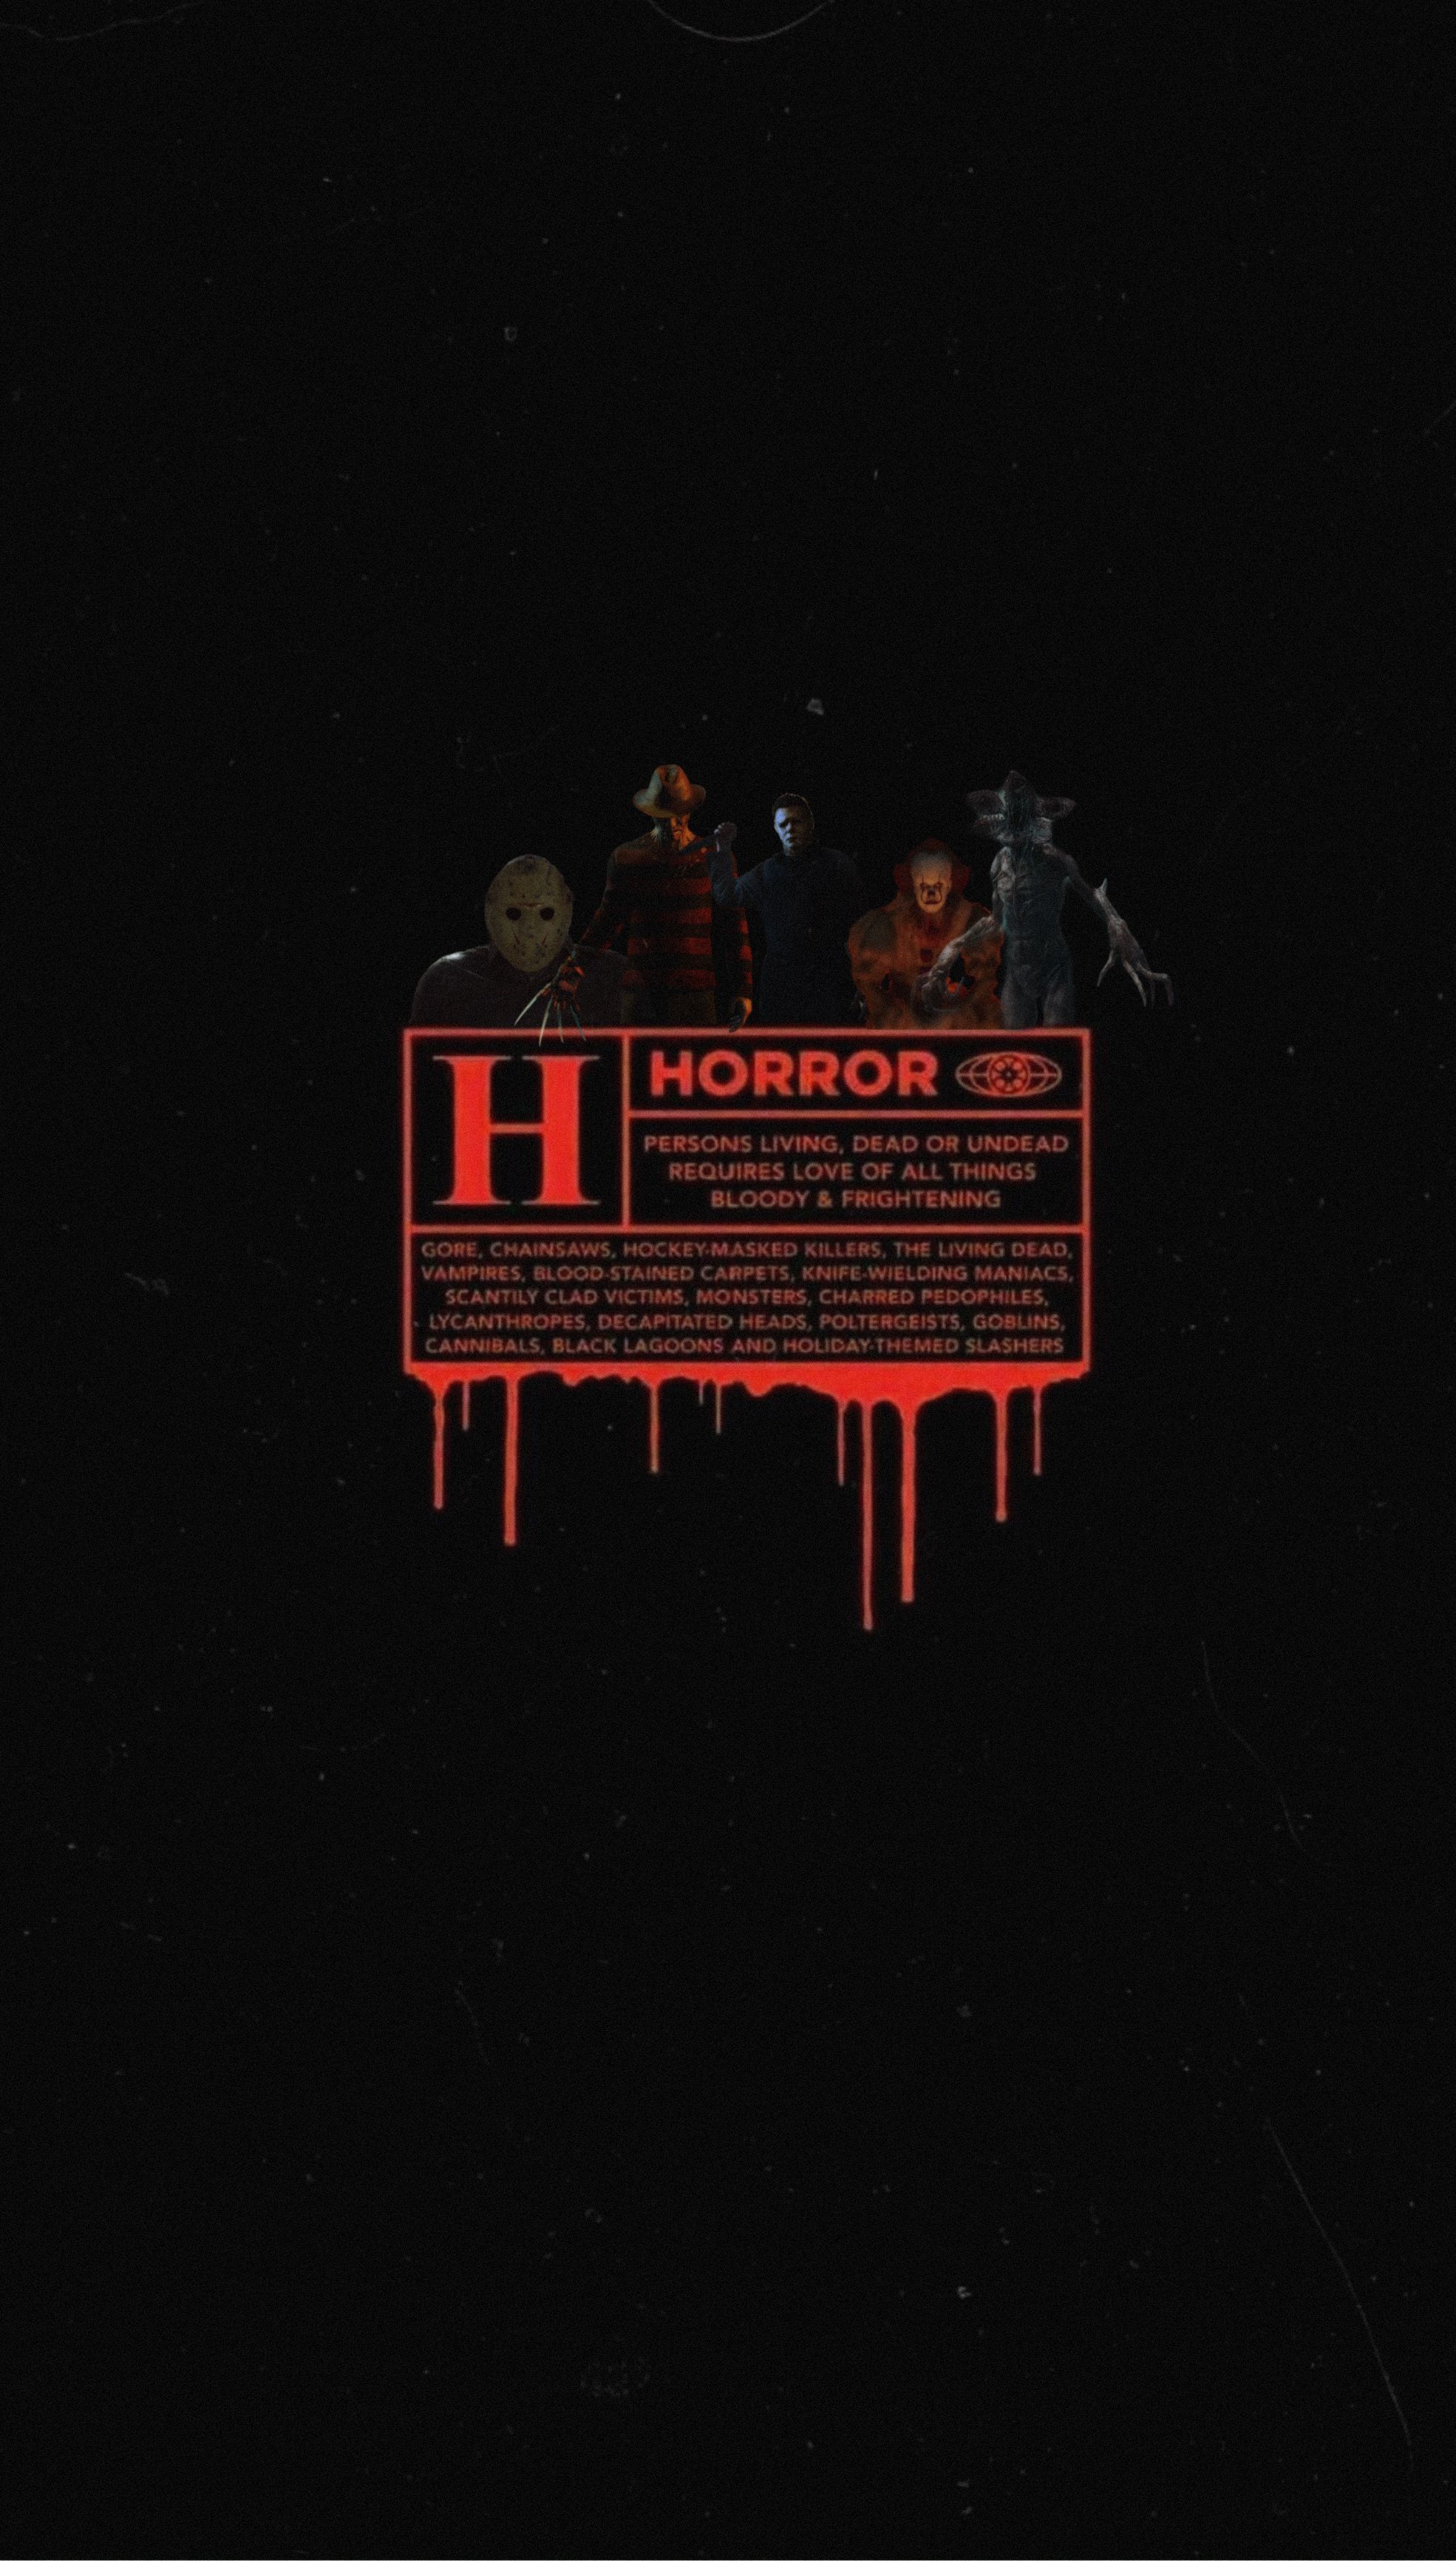 Horror Movie Aesthetic Wallpaper